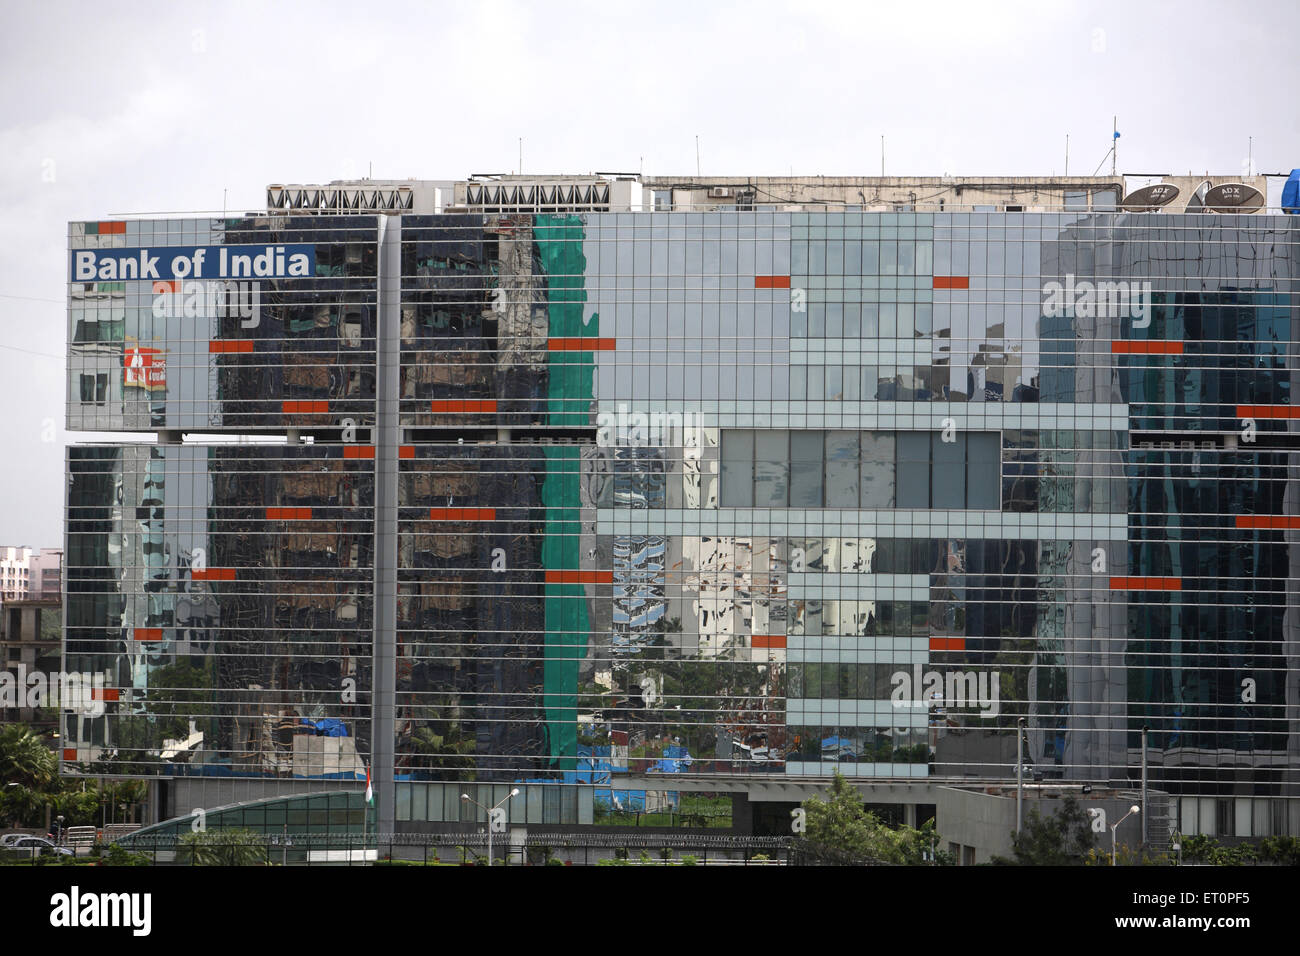 Bank of India building, Bandra Kurla complex, Bombay, Mumbai, Maharashtra, India Stock Photo